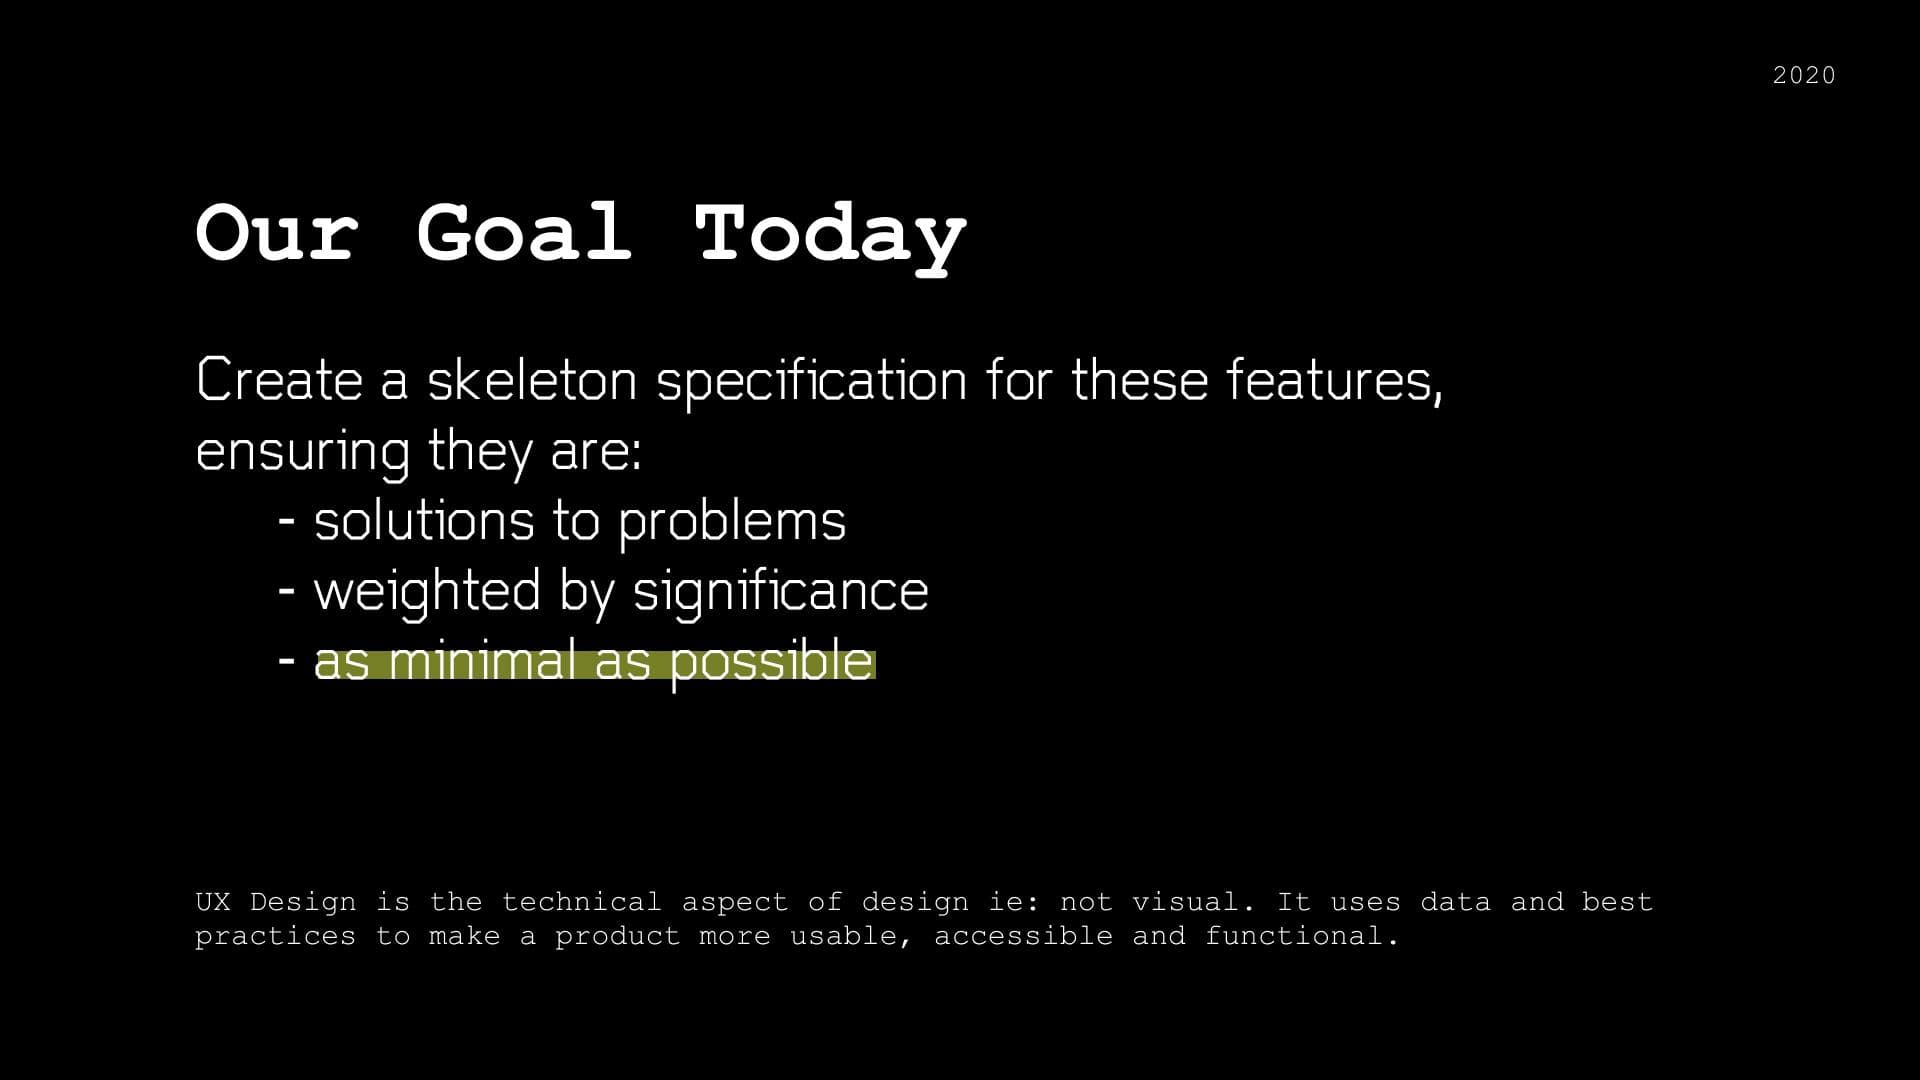 Presentation slide showing the aforementioned 3 goals.